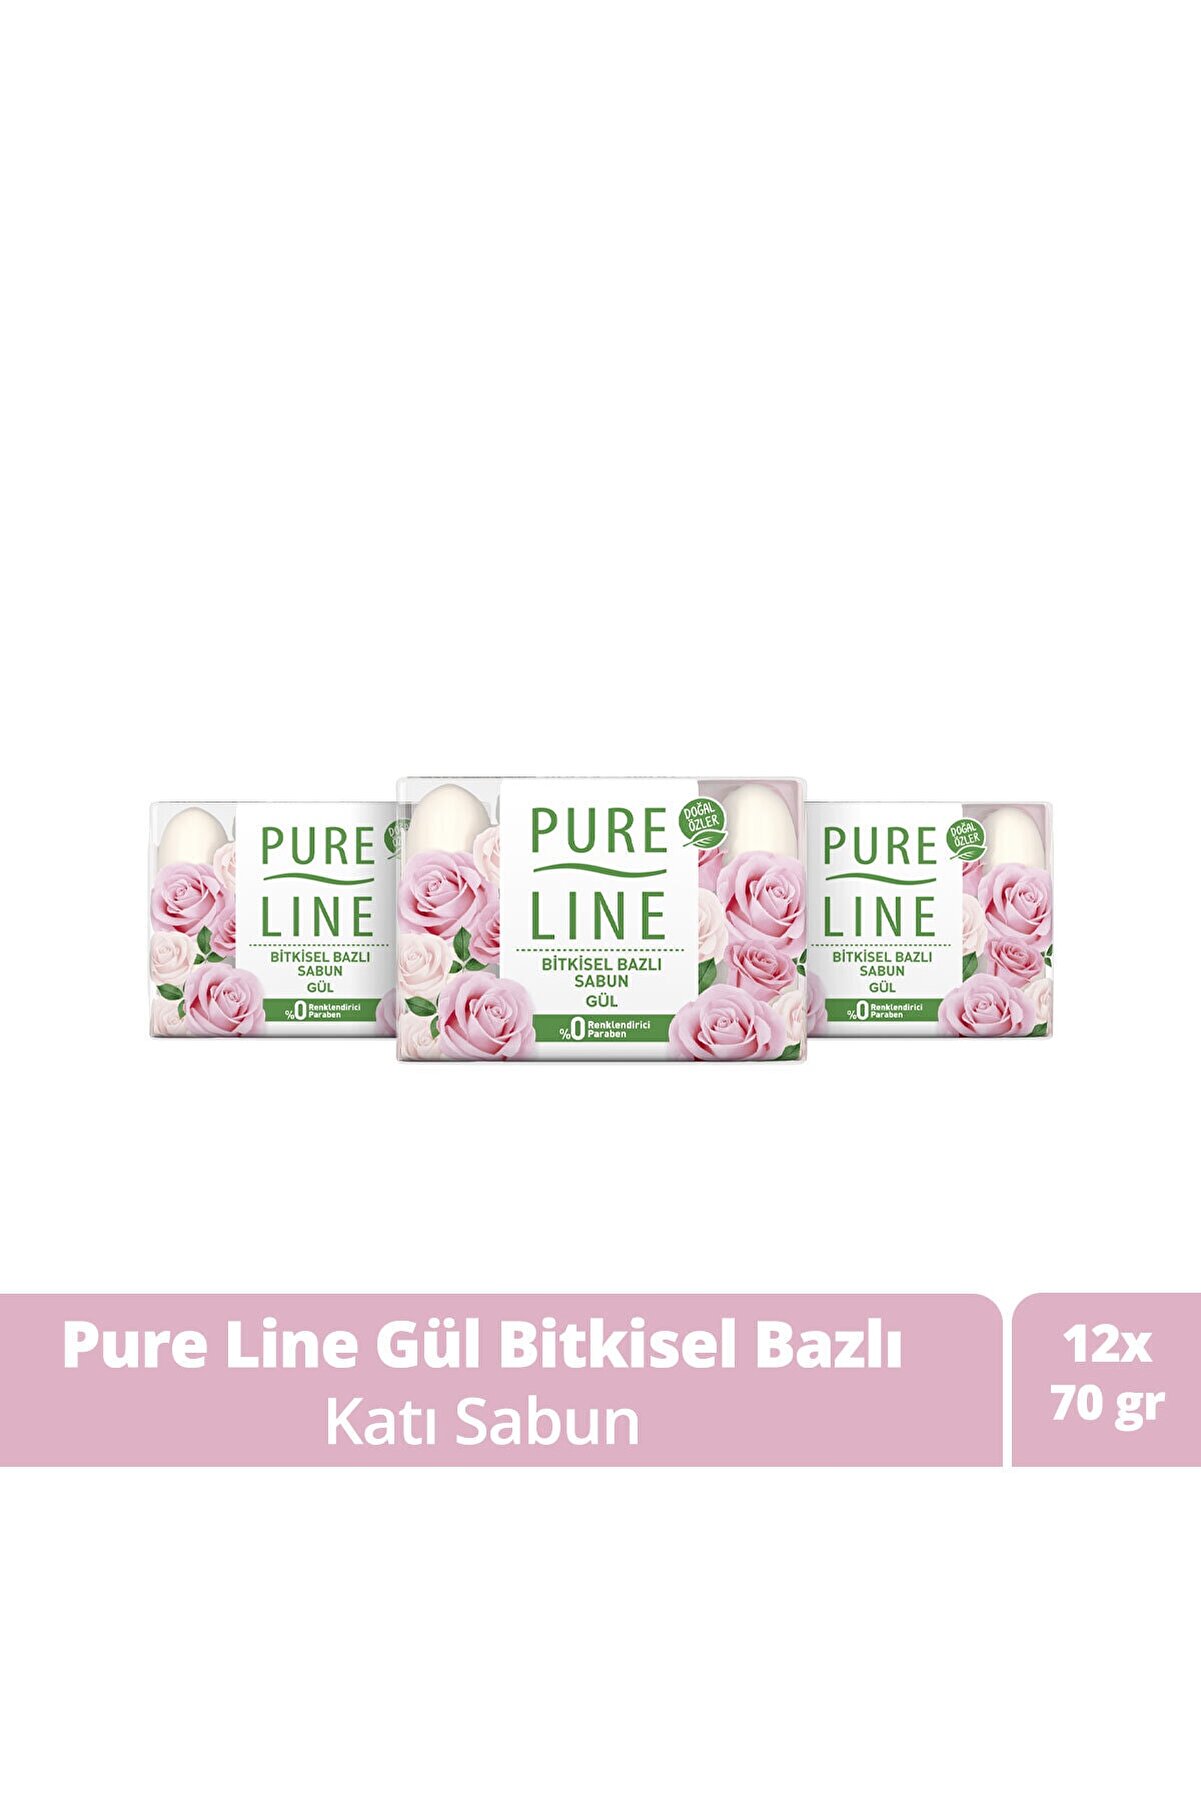 Pure Line Doğal Özler Ile Bitkisel Bazlı Sabun Gül 70 gr X12